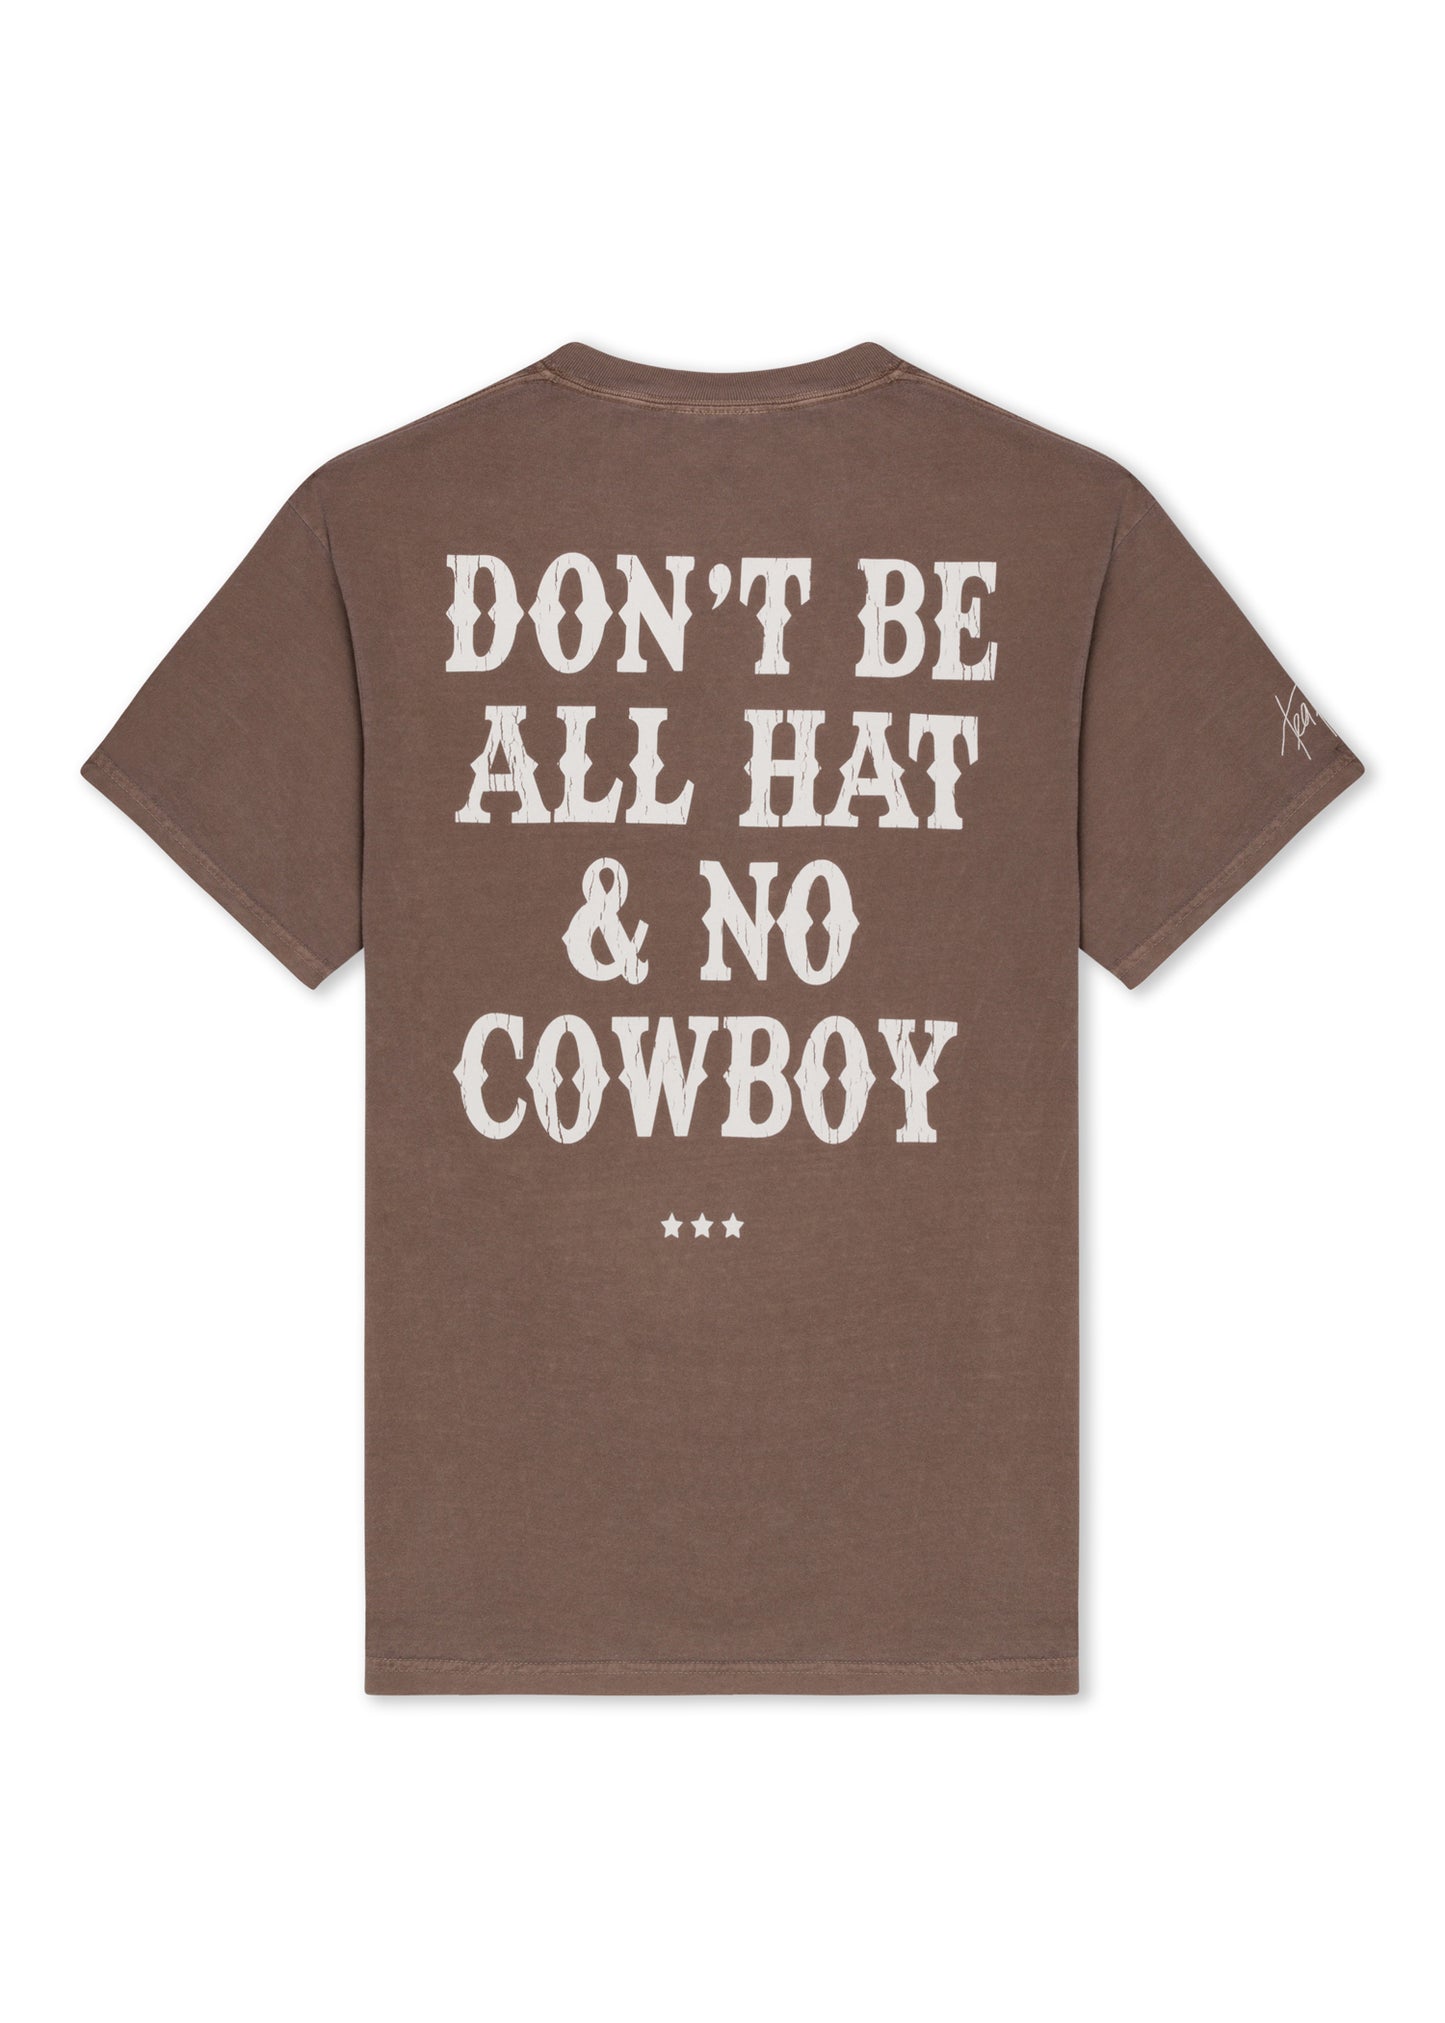 ALL HAT & NO COWBOY